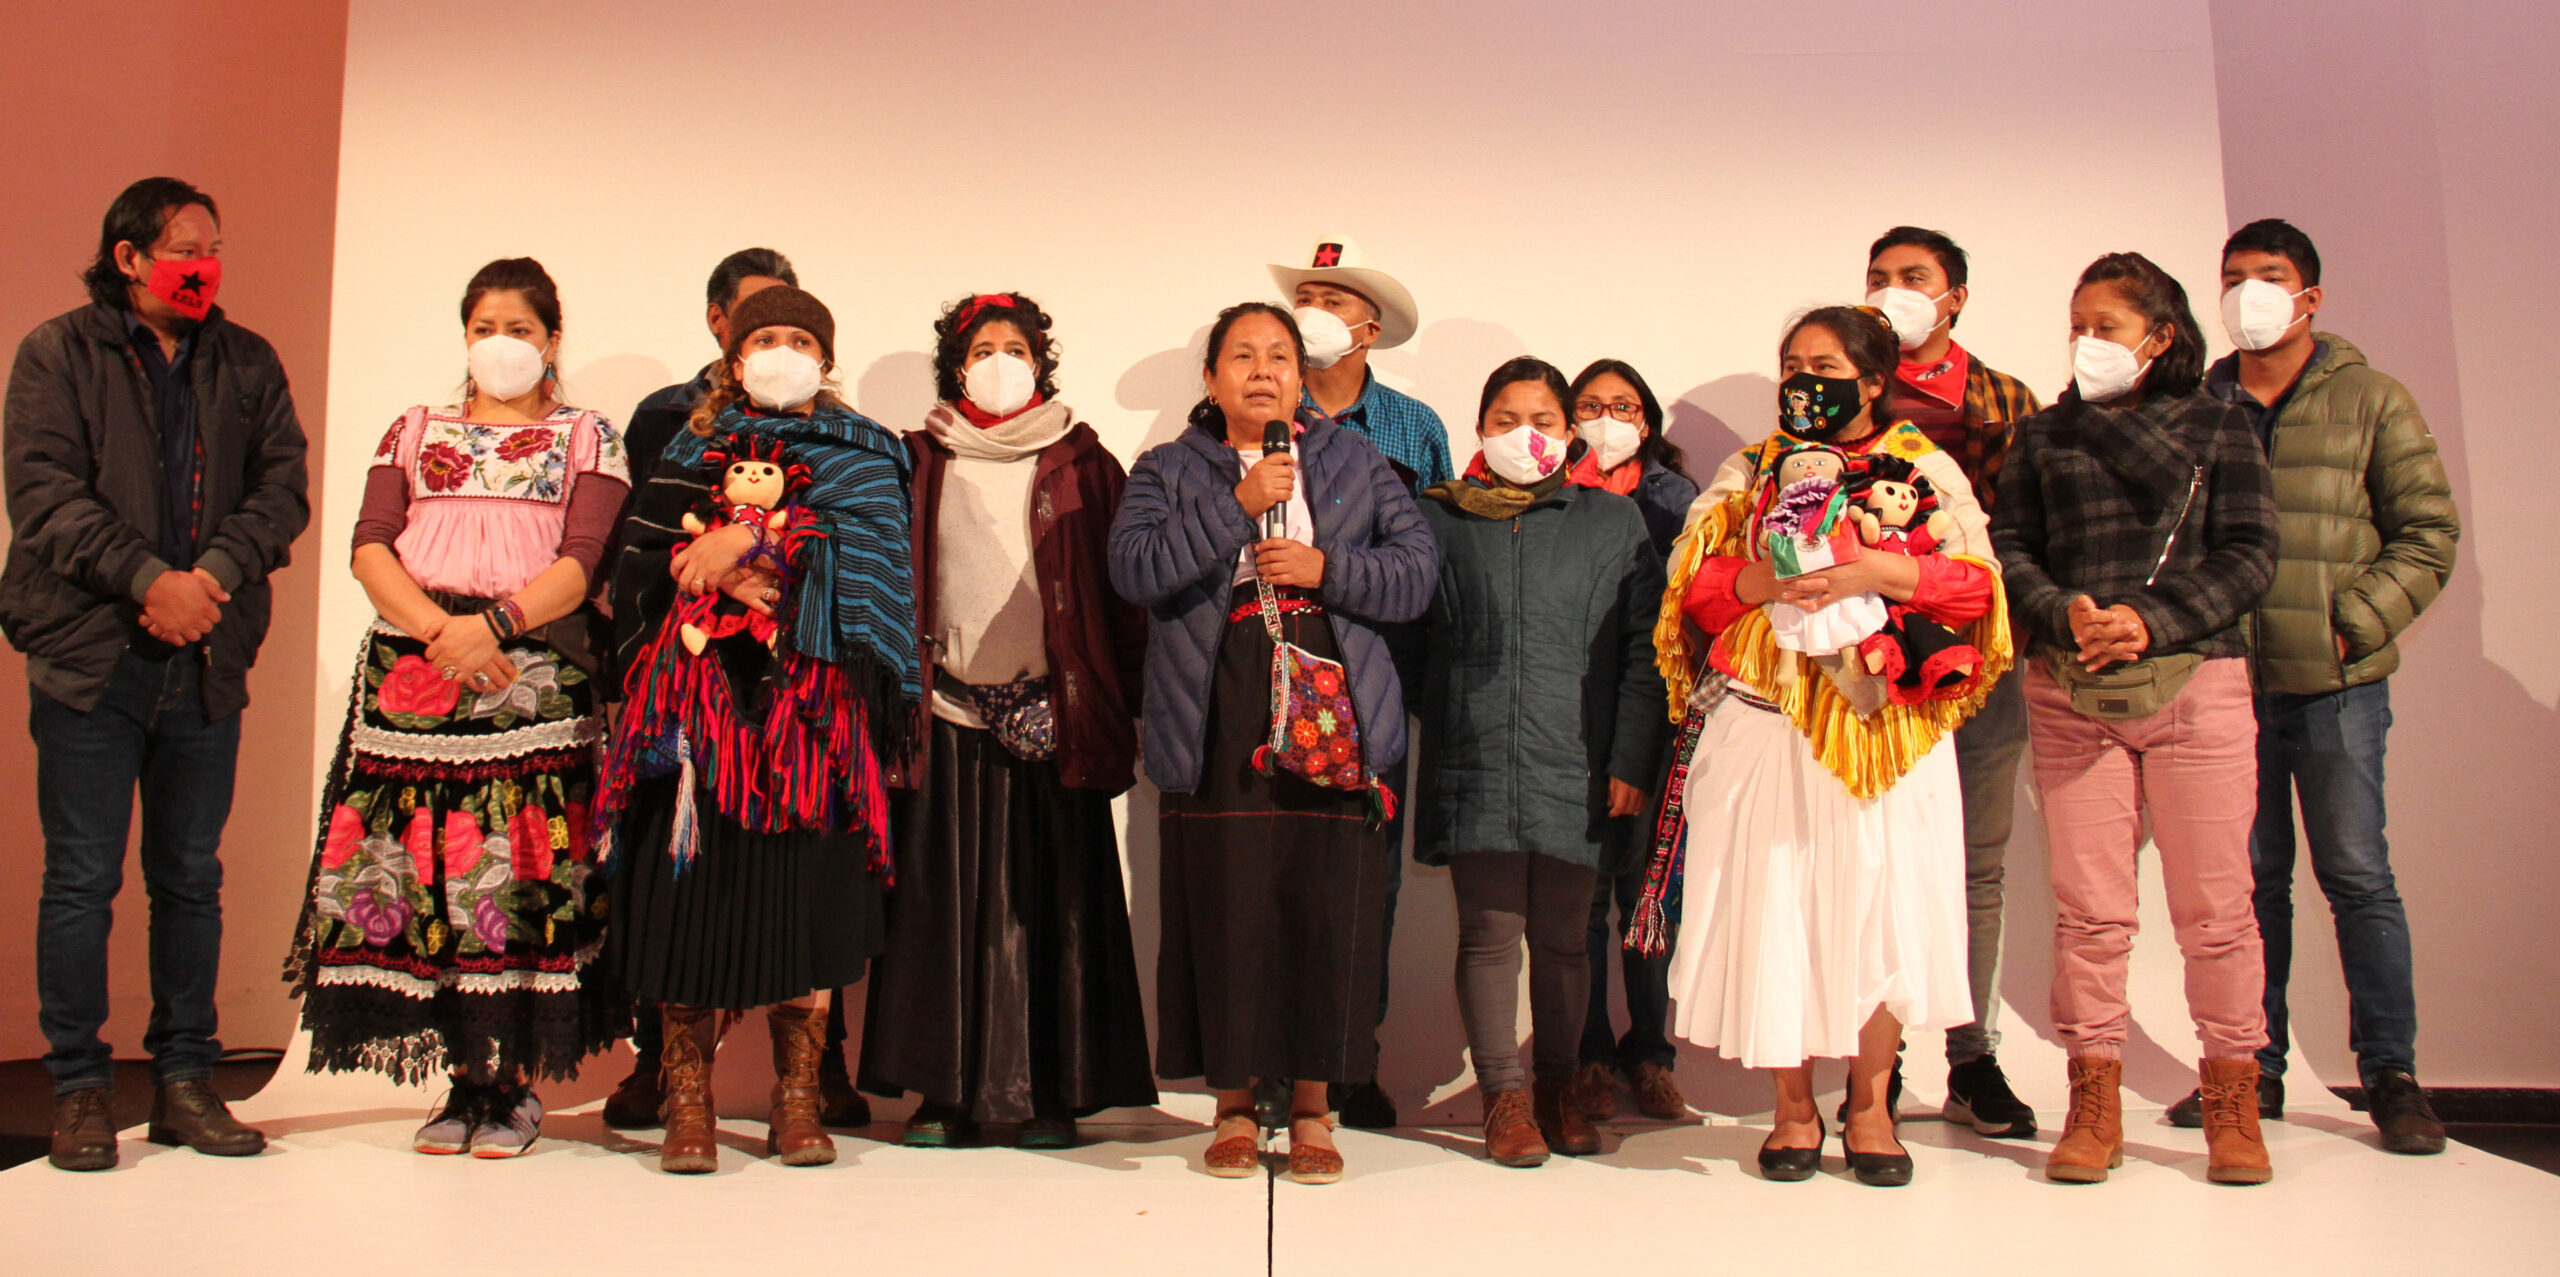 Delegation der Indigenas und Zapatistas auf der Bühne der Ovalhalle